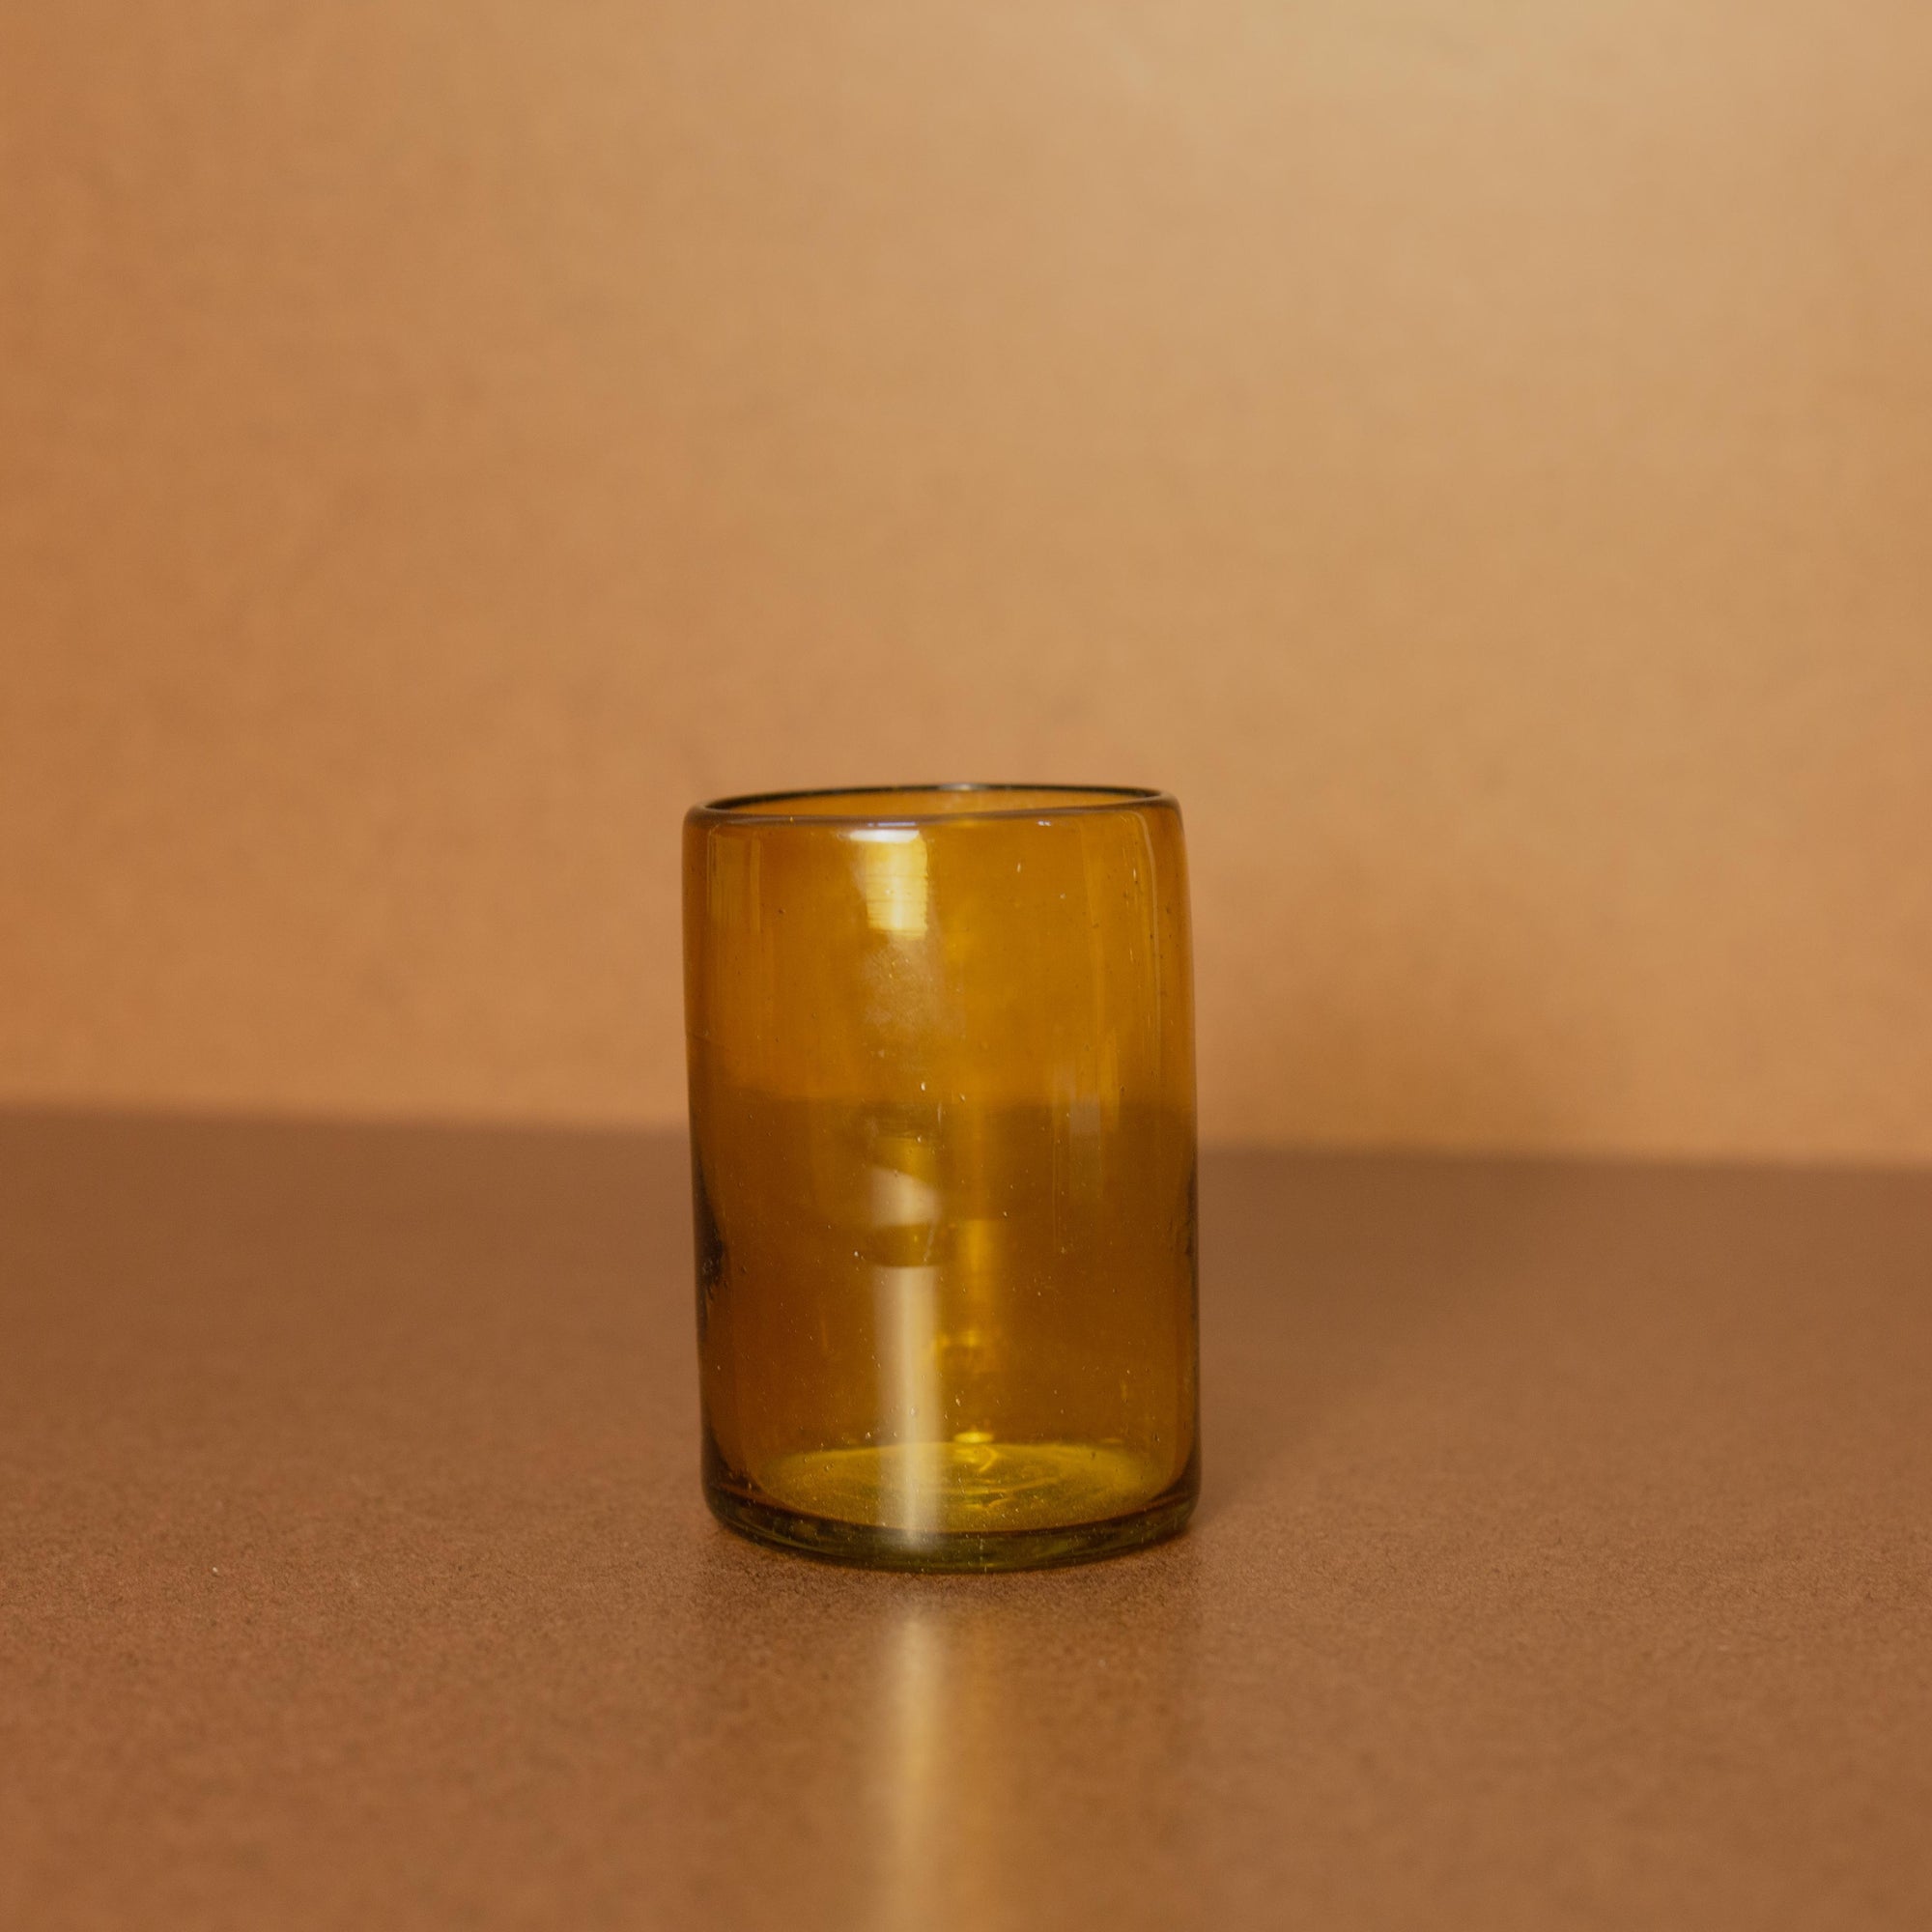 Luz Collection - Atardecer Glass Carafe Set